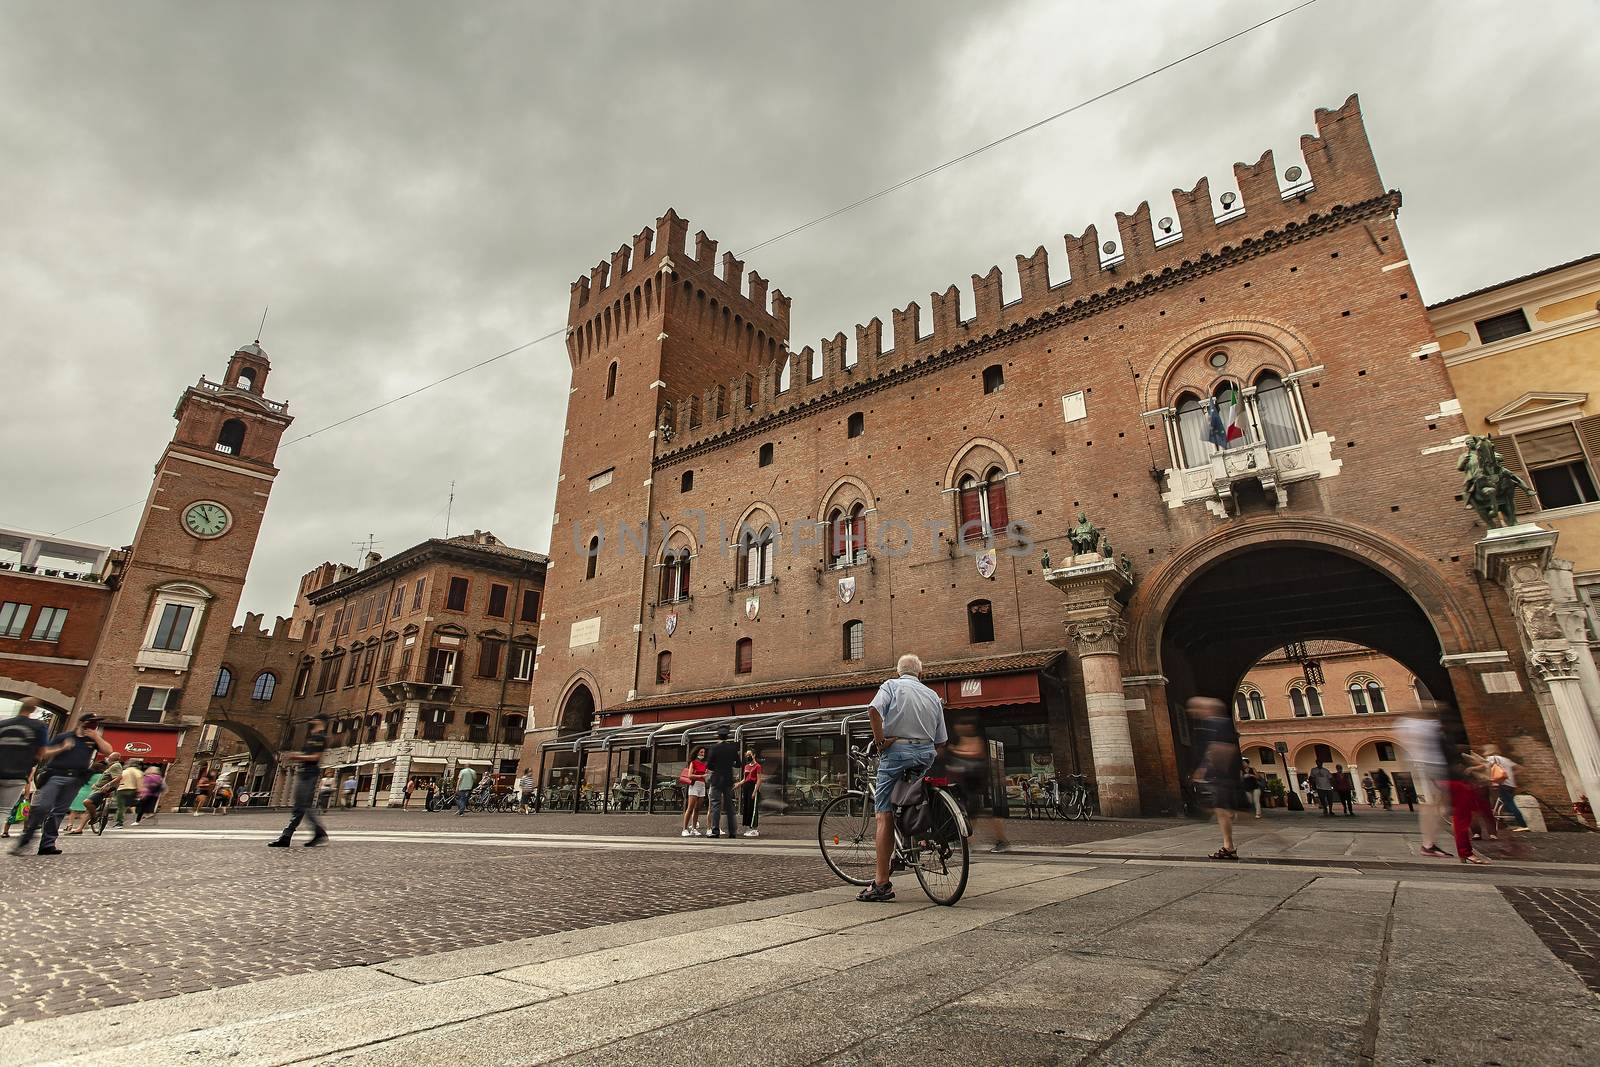 View of Piazza del Municipio in Ferrara in Italy by pippocarlot